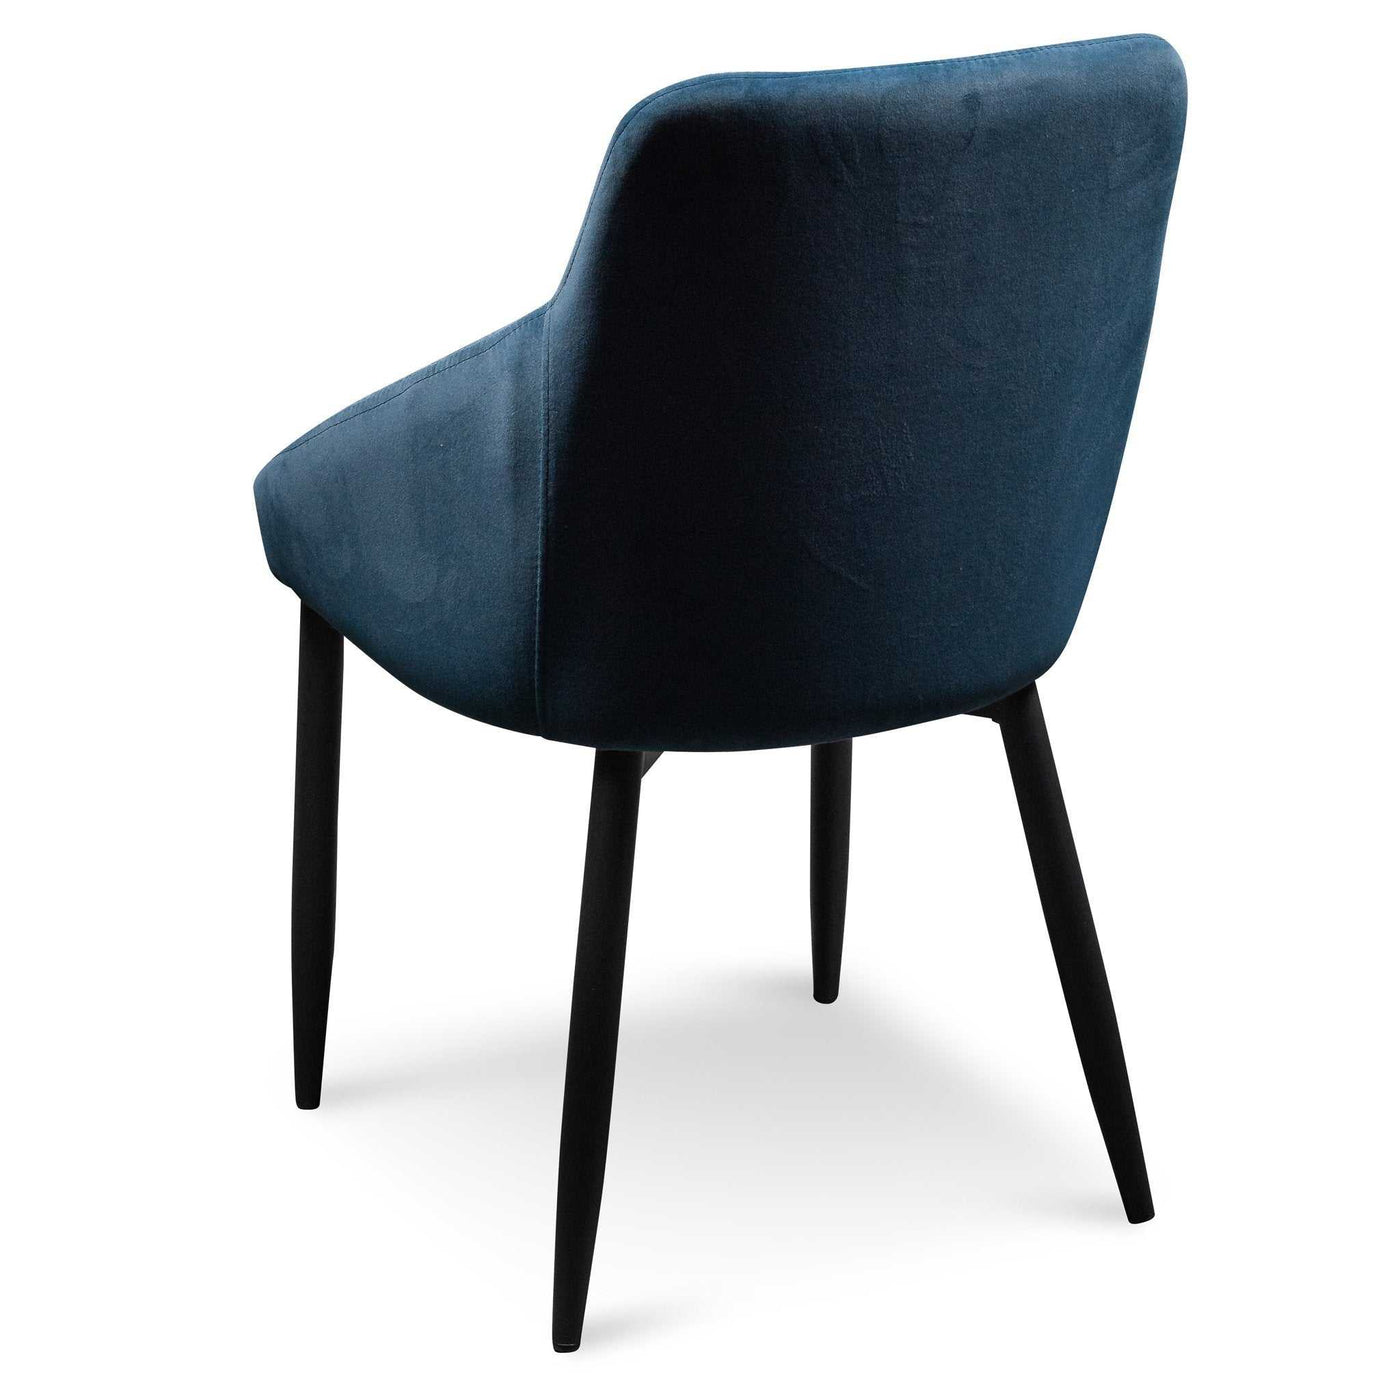 Dining Chair - Navy Blue Velvet with Black Legs